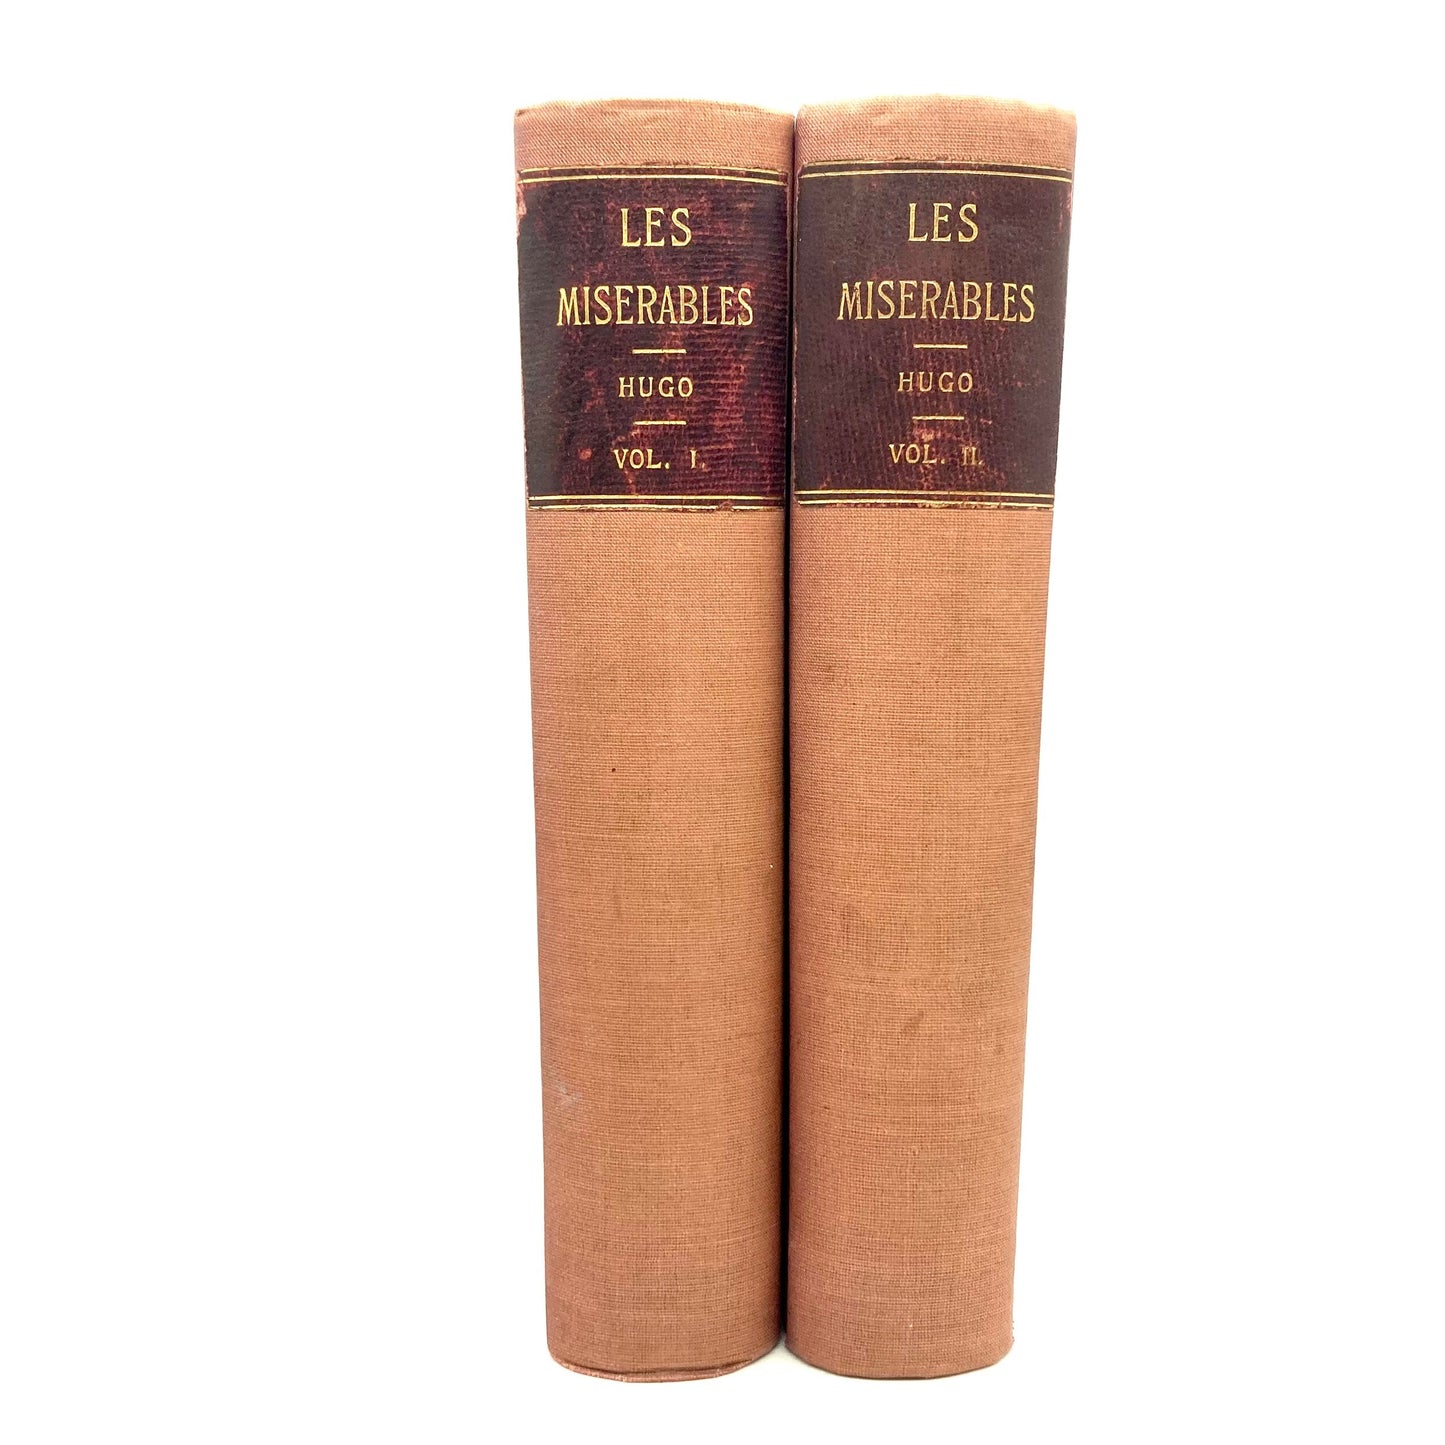 HUGO, Victor "Les Miserables" [John C Winston, c1909] - Buzz Bookstore